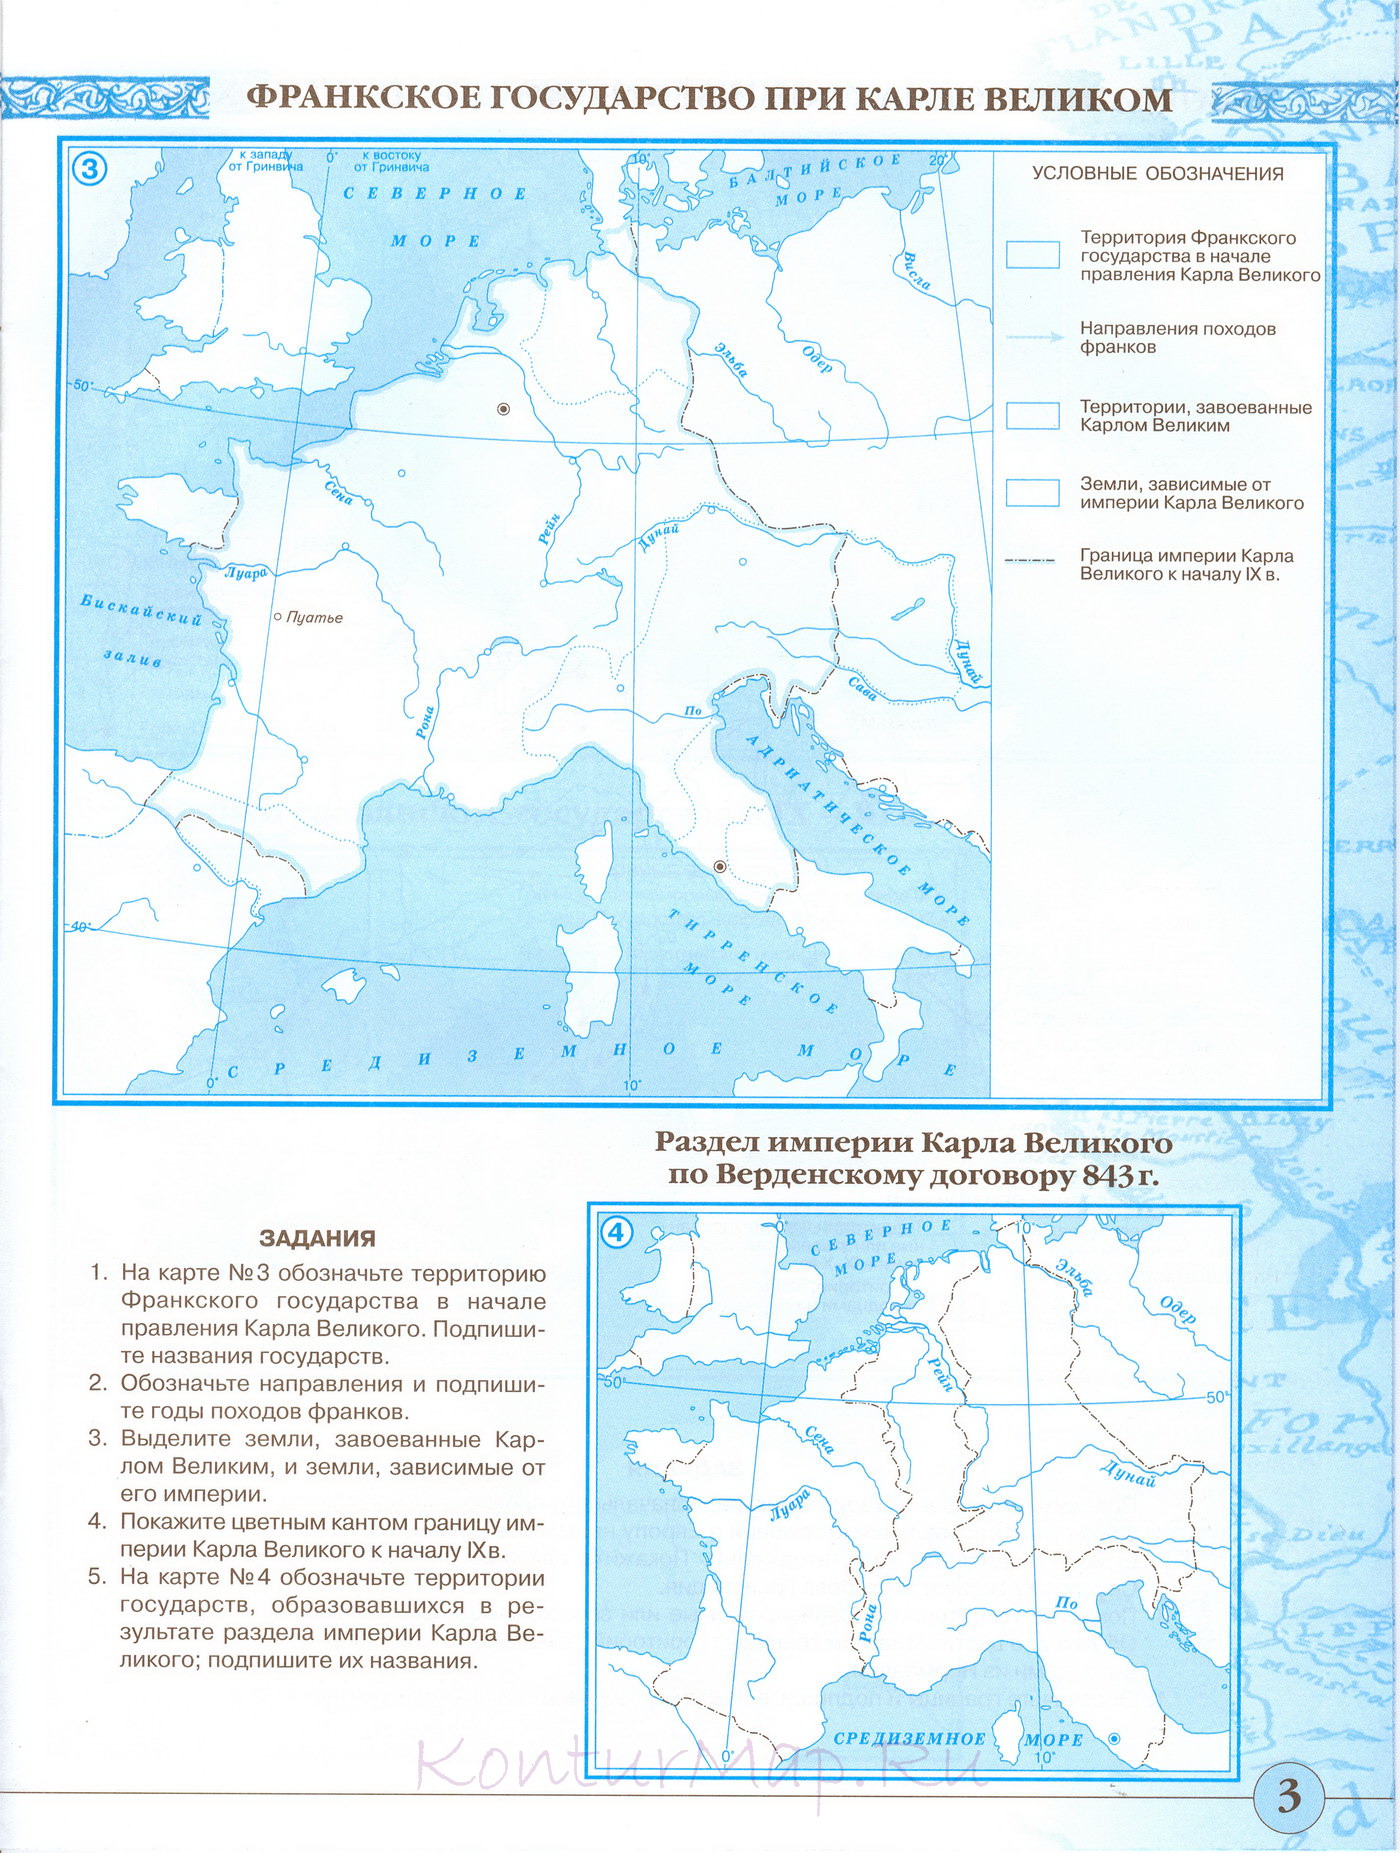 Контурная карта по истории 6 класс образование российского централизованного государства